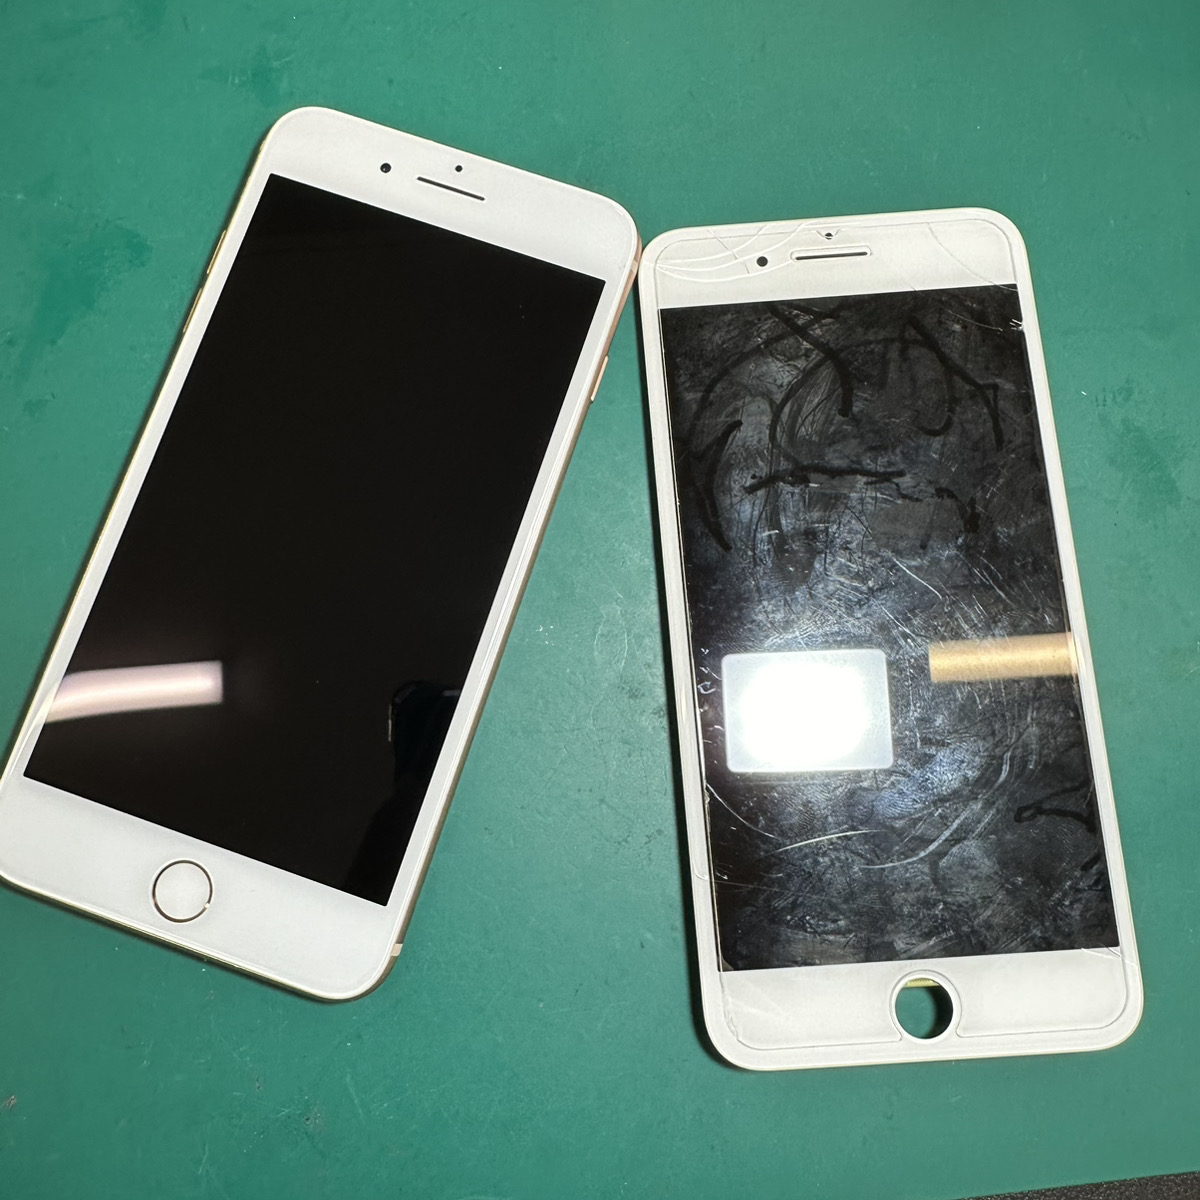 浦和原山店: iPhone8Plus液晶修理6,800円